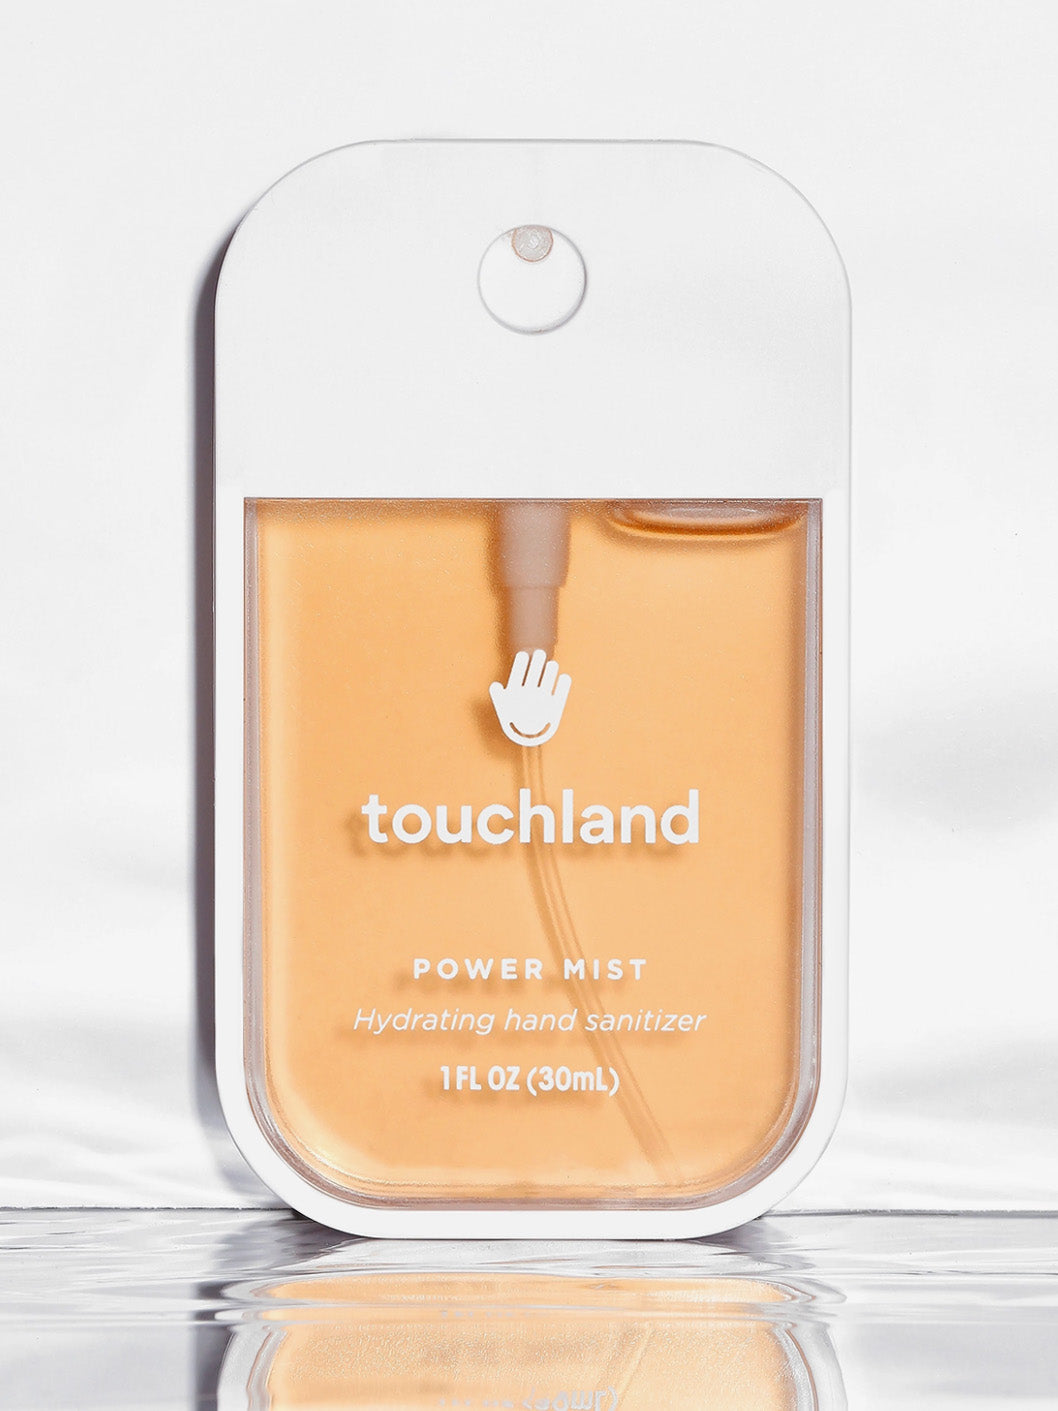 velvet peach power mist hand sanitizer